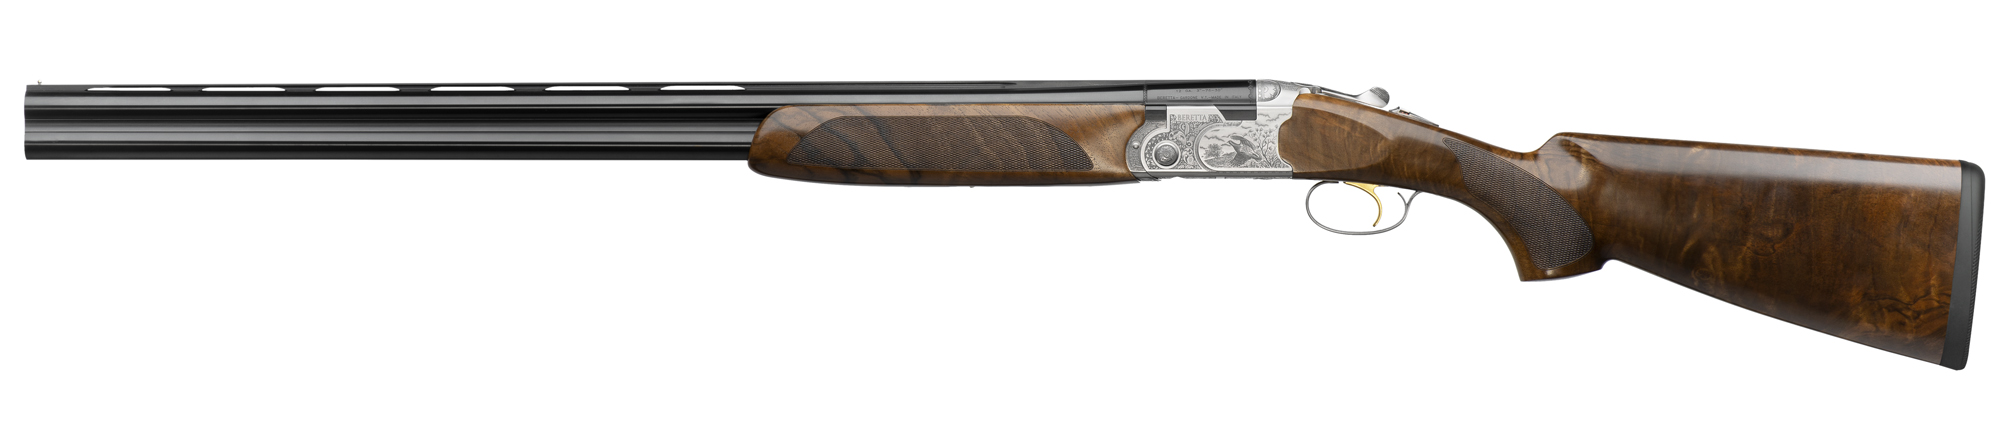 Beretta Silver Pigeon III, il nuovo fucile da caccia di Beretta